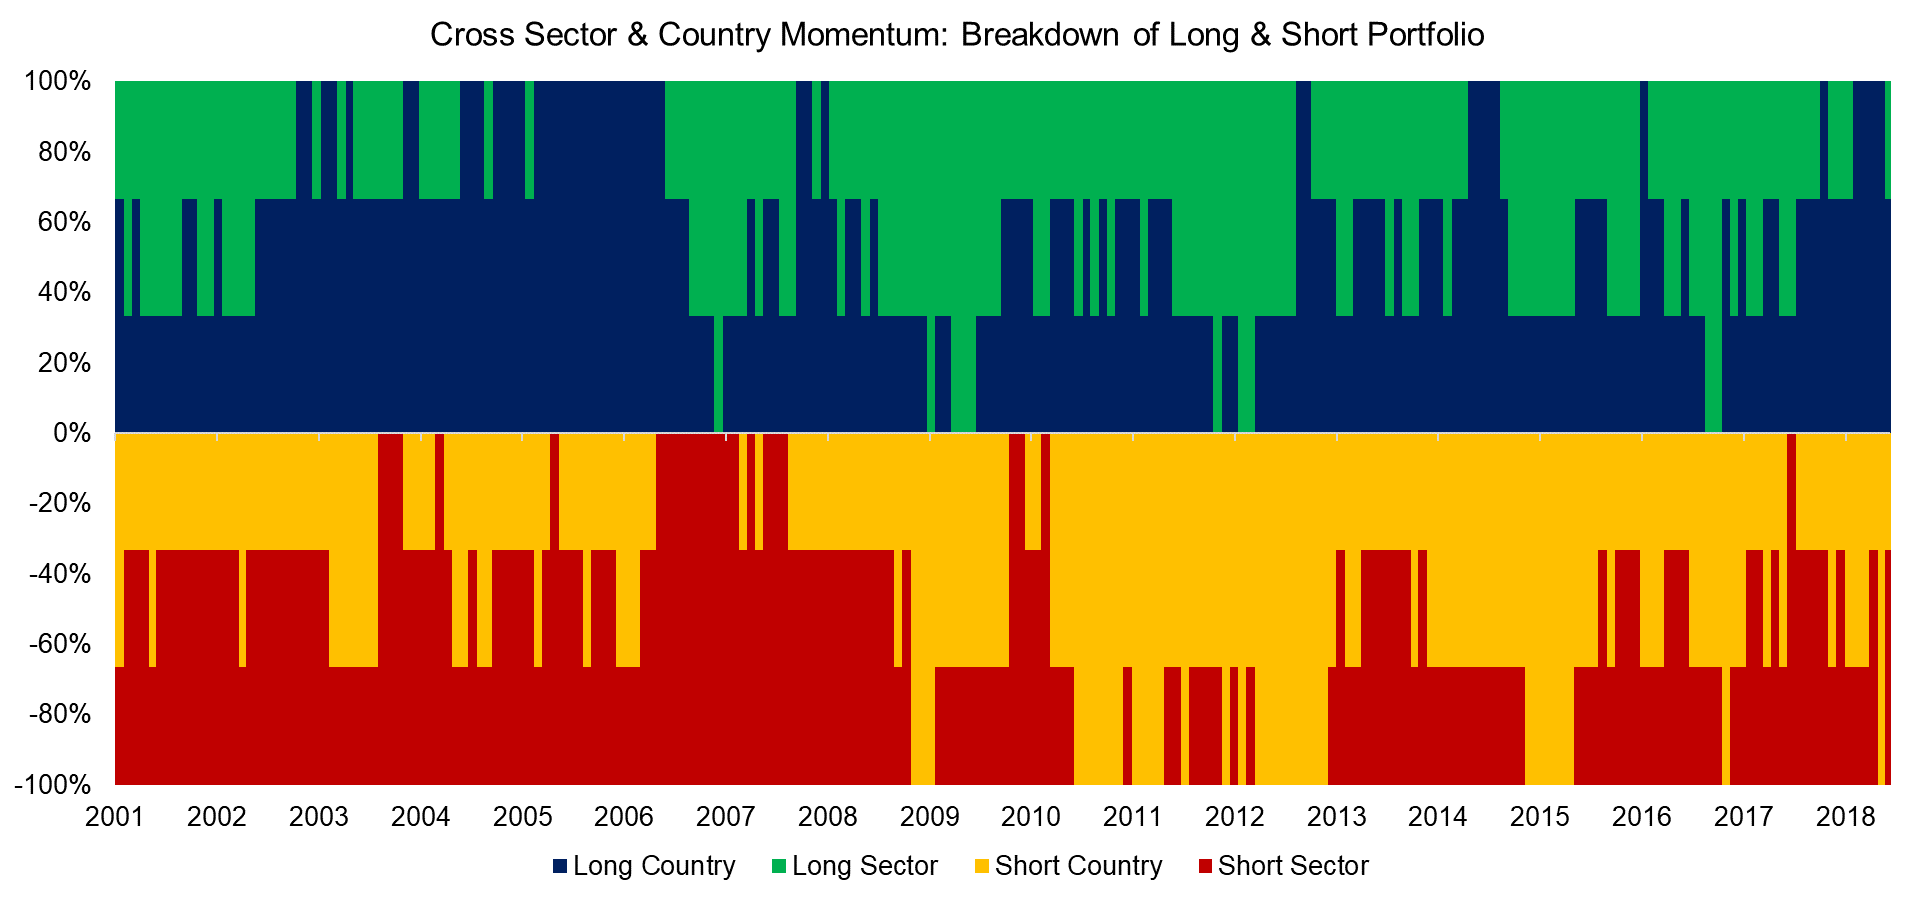 Cross Sector & Country Momentum Breakdown of Long & Short Portfolio